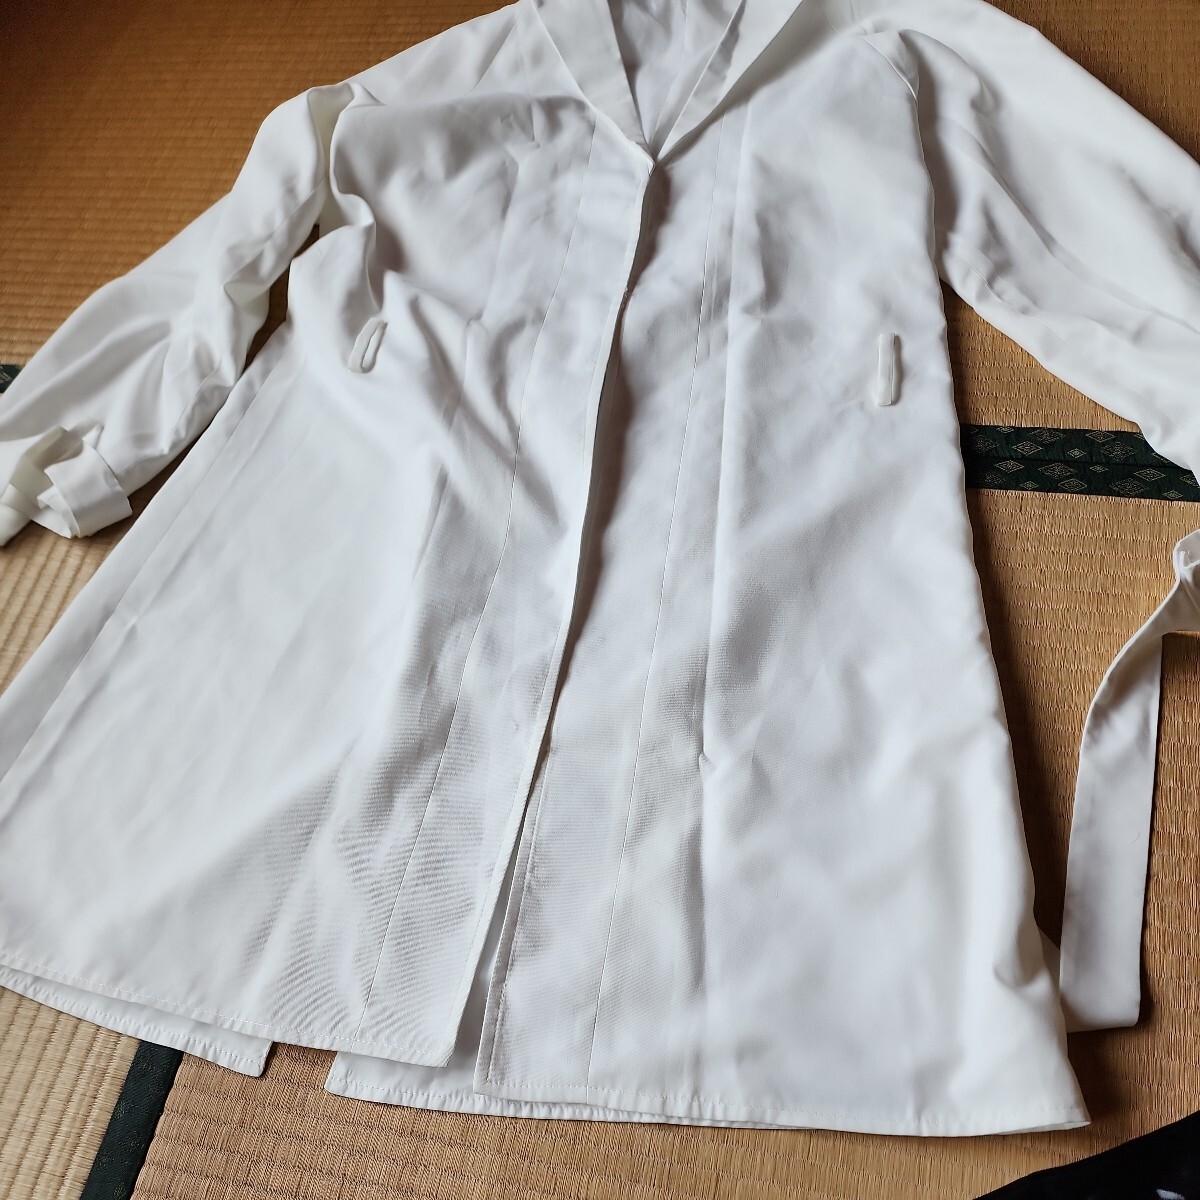 NIKKEmi - laM размер такой же и т.п. один иен старт костюмированная игра .. белый мягкость .. пальто . кожа детали аксессуары имеется чёрный фиолетовый длинный парик 